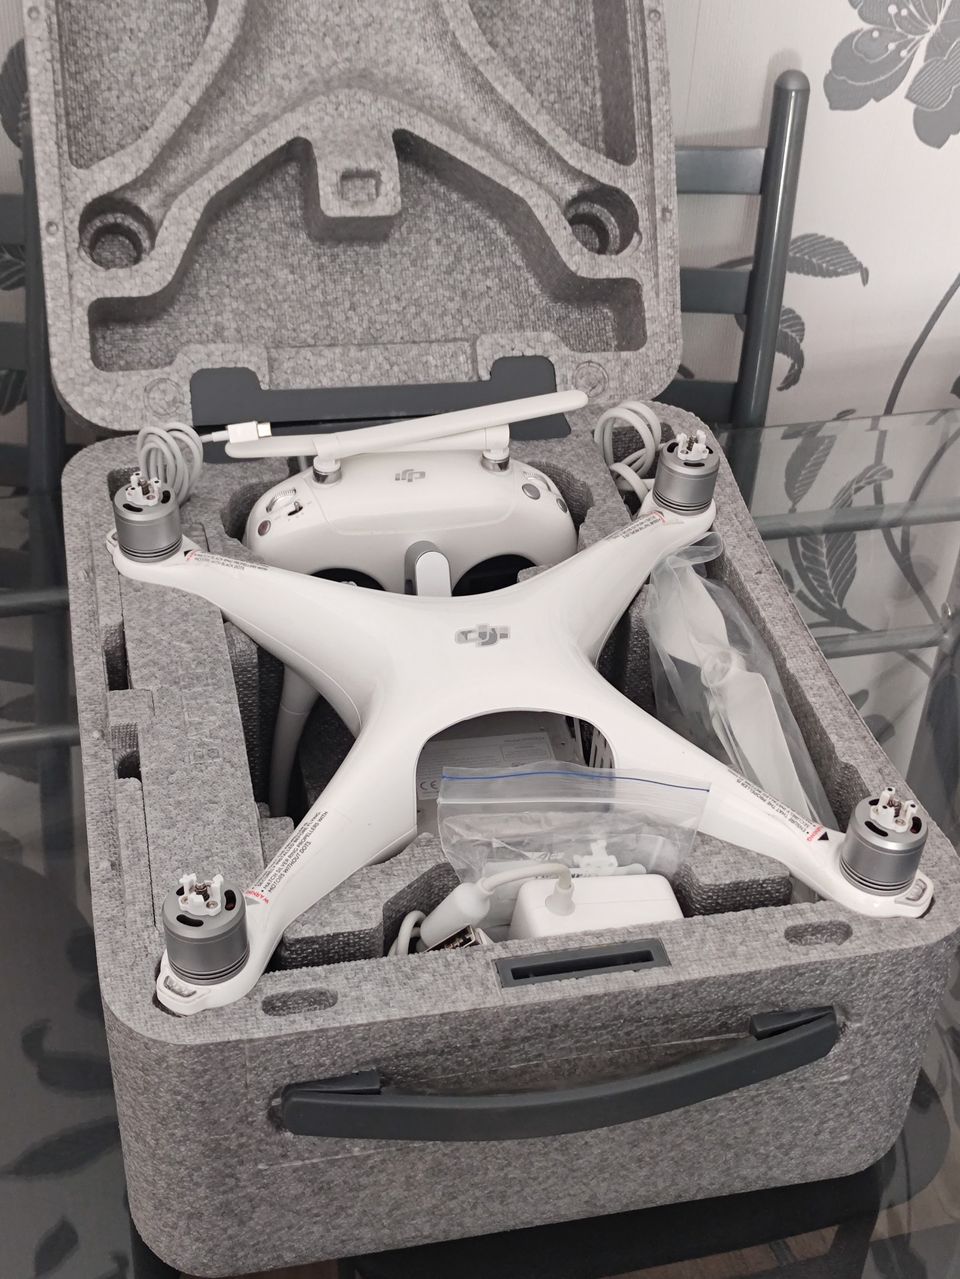 Dji Phantom 4 Advanced+ 4K drone